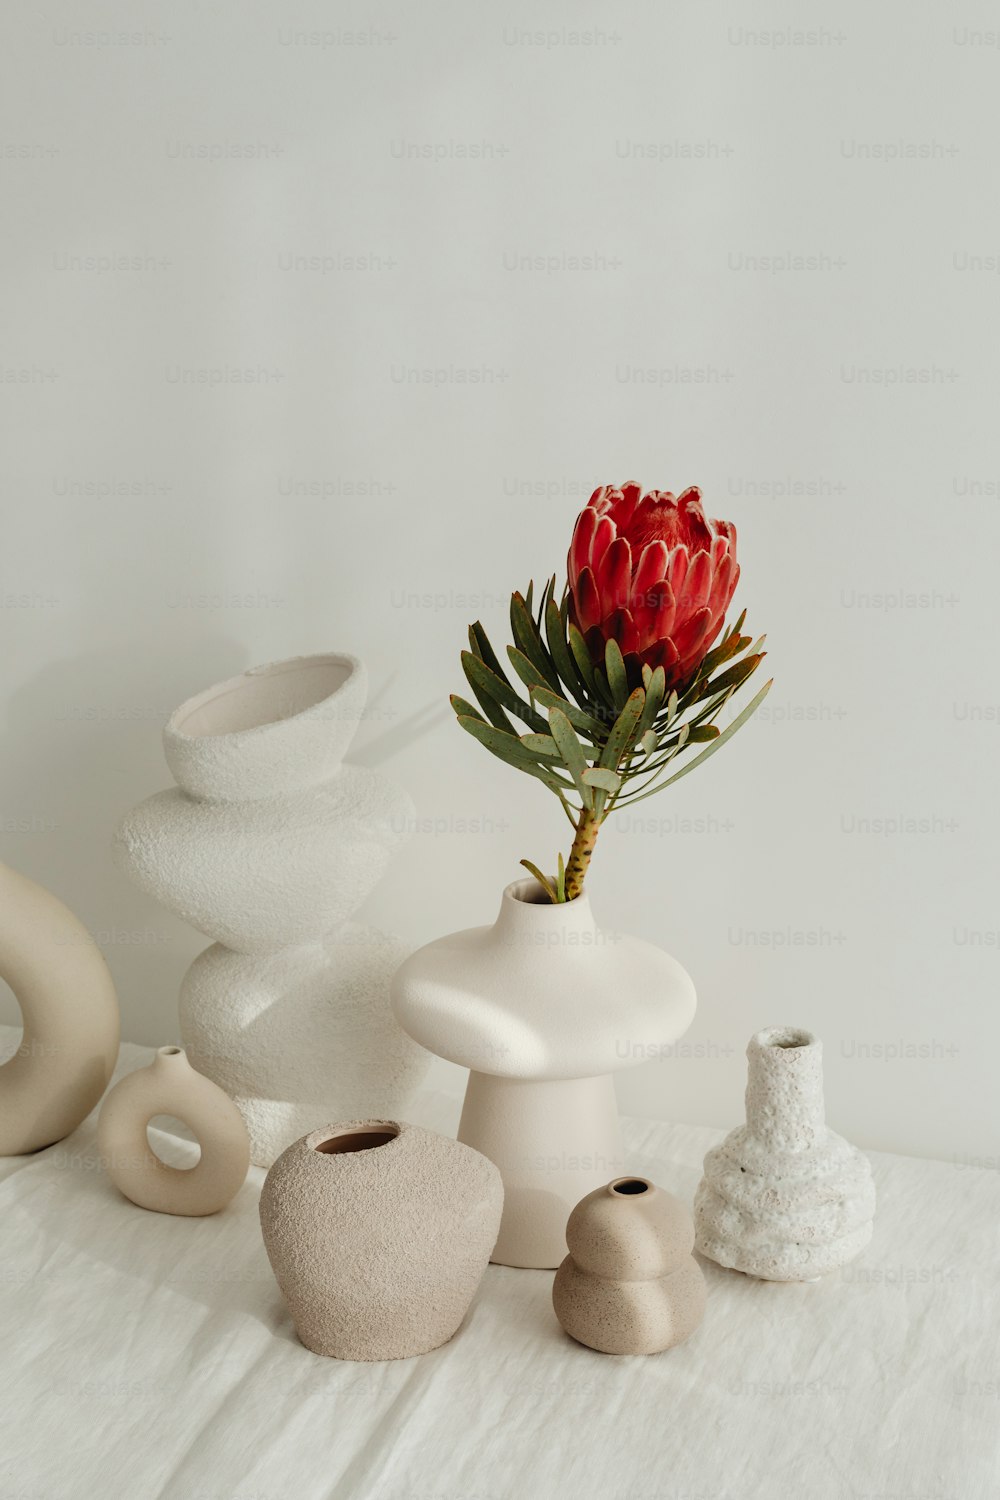 꽃병과 붉은 꽃을 얹은 흰색 테이블